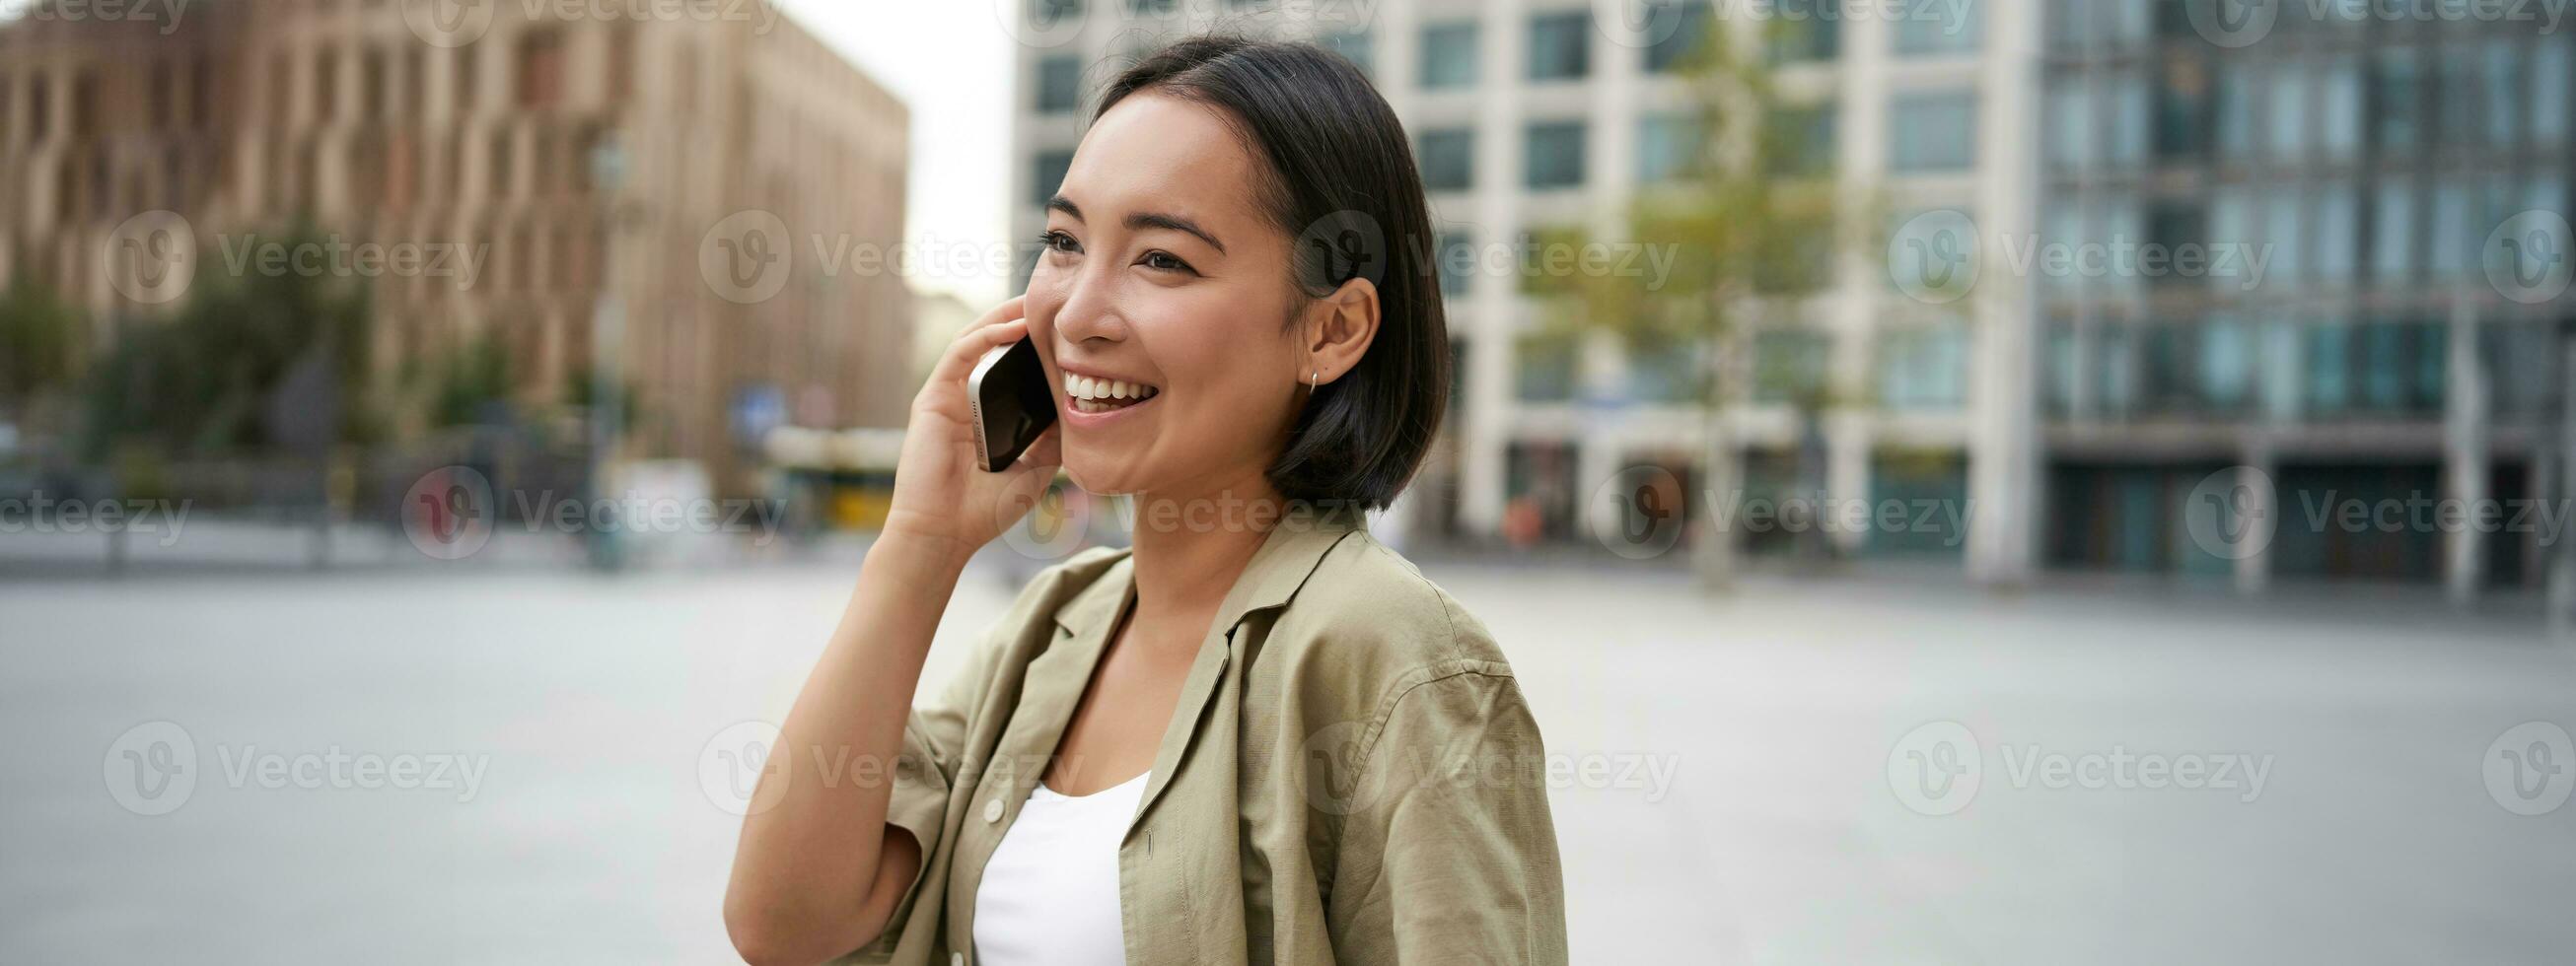 modern jong Aziatisch meisje praat Aan mobiel telefoon, toepassingen telefoon Aan stad straat. vrouw glimlachen terwijl roeping iemand Aan smartphone foto